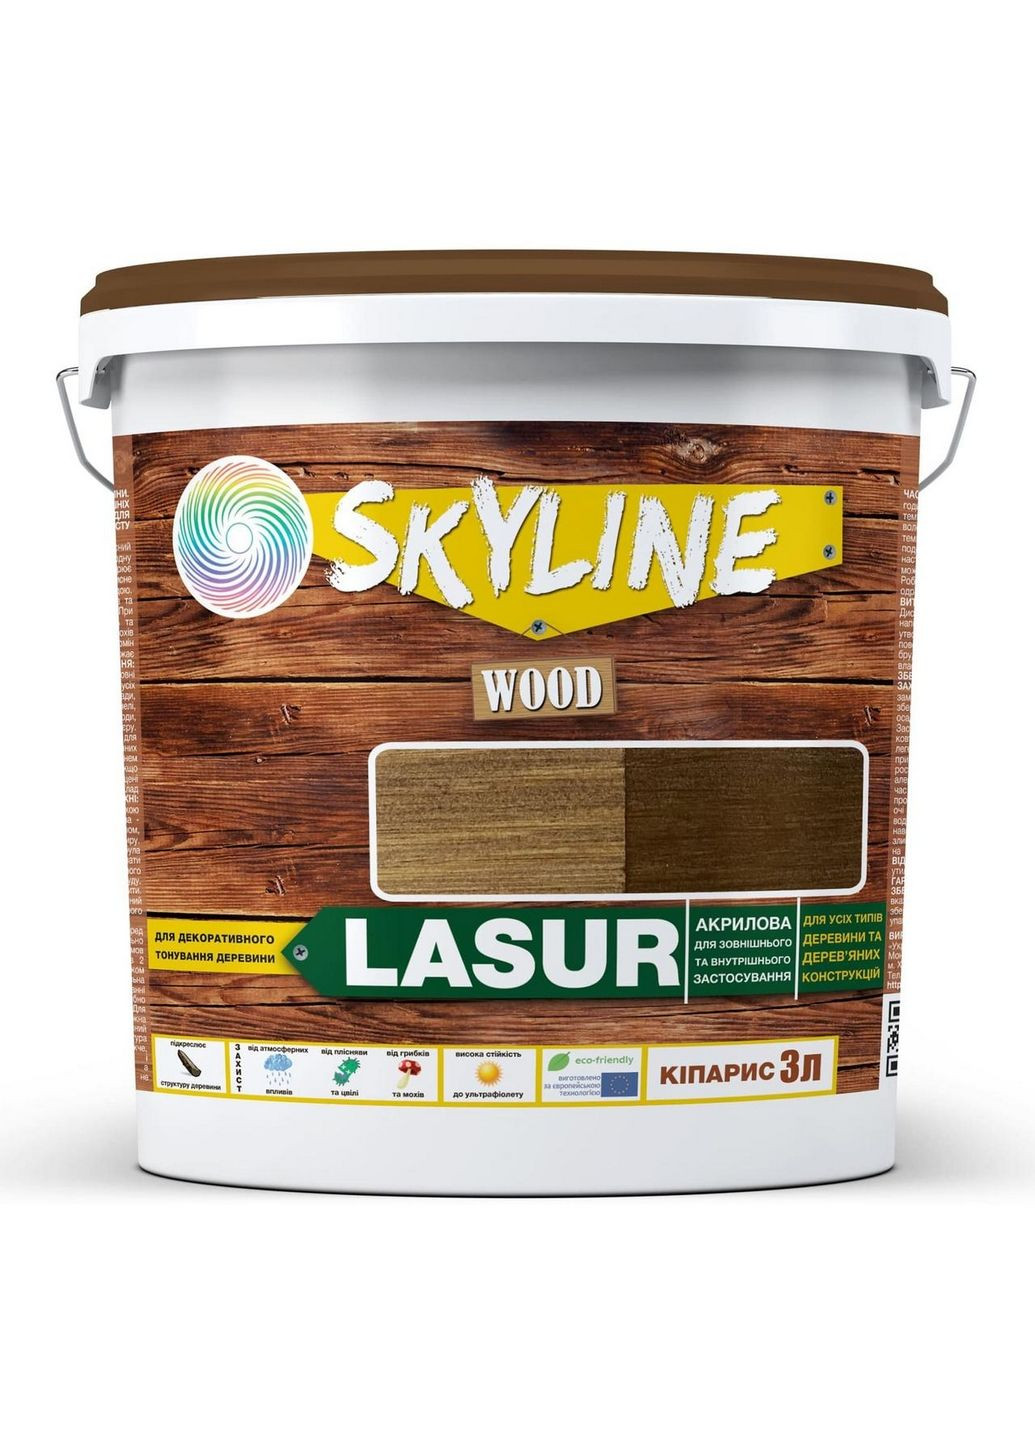 Декоративно-защитная лазурь для обработки дерева LASUR Wood 3 л SkyLine (283326158)